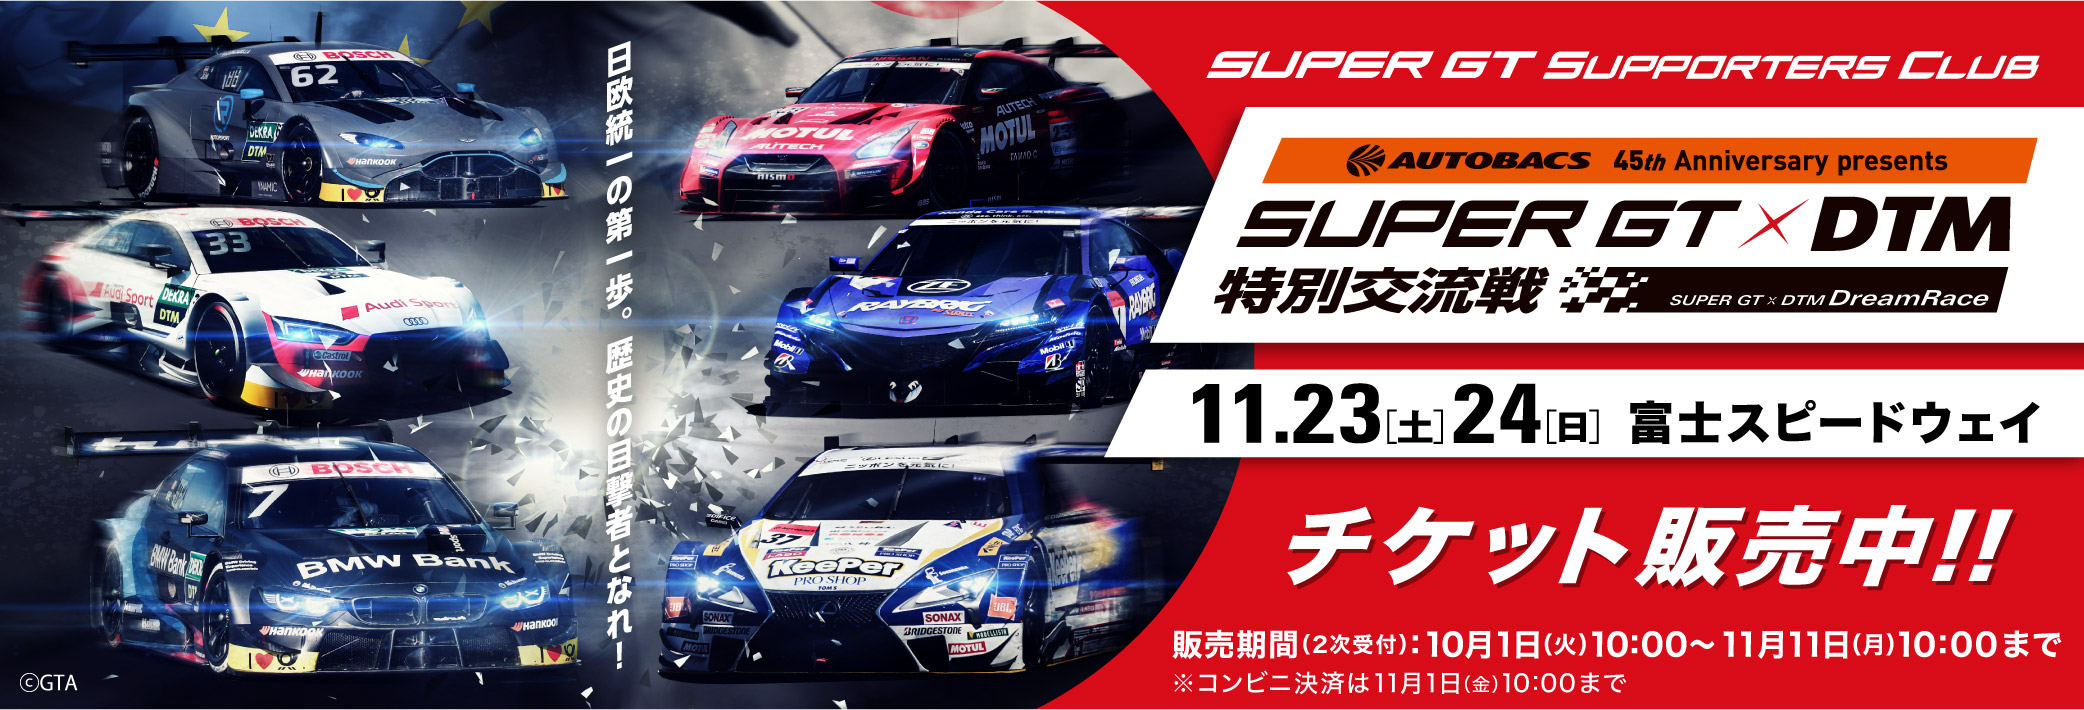 AUTOBACS 45th Anniversary presents SUPER GT x DTM 特別交流戦 チケット販売のご案内